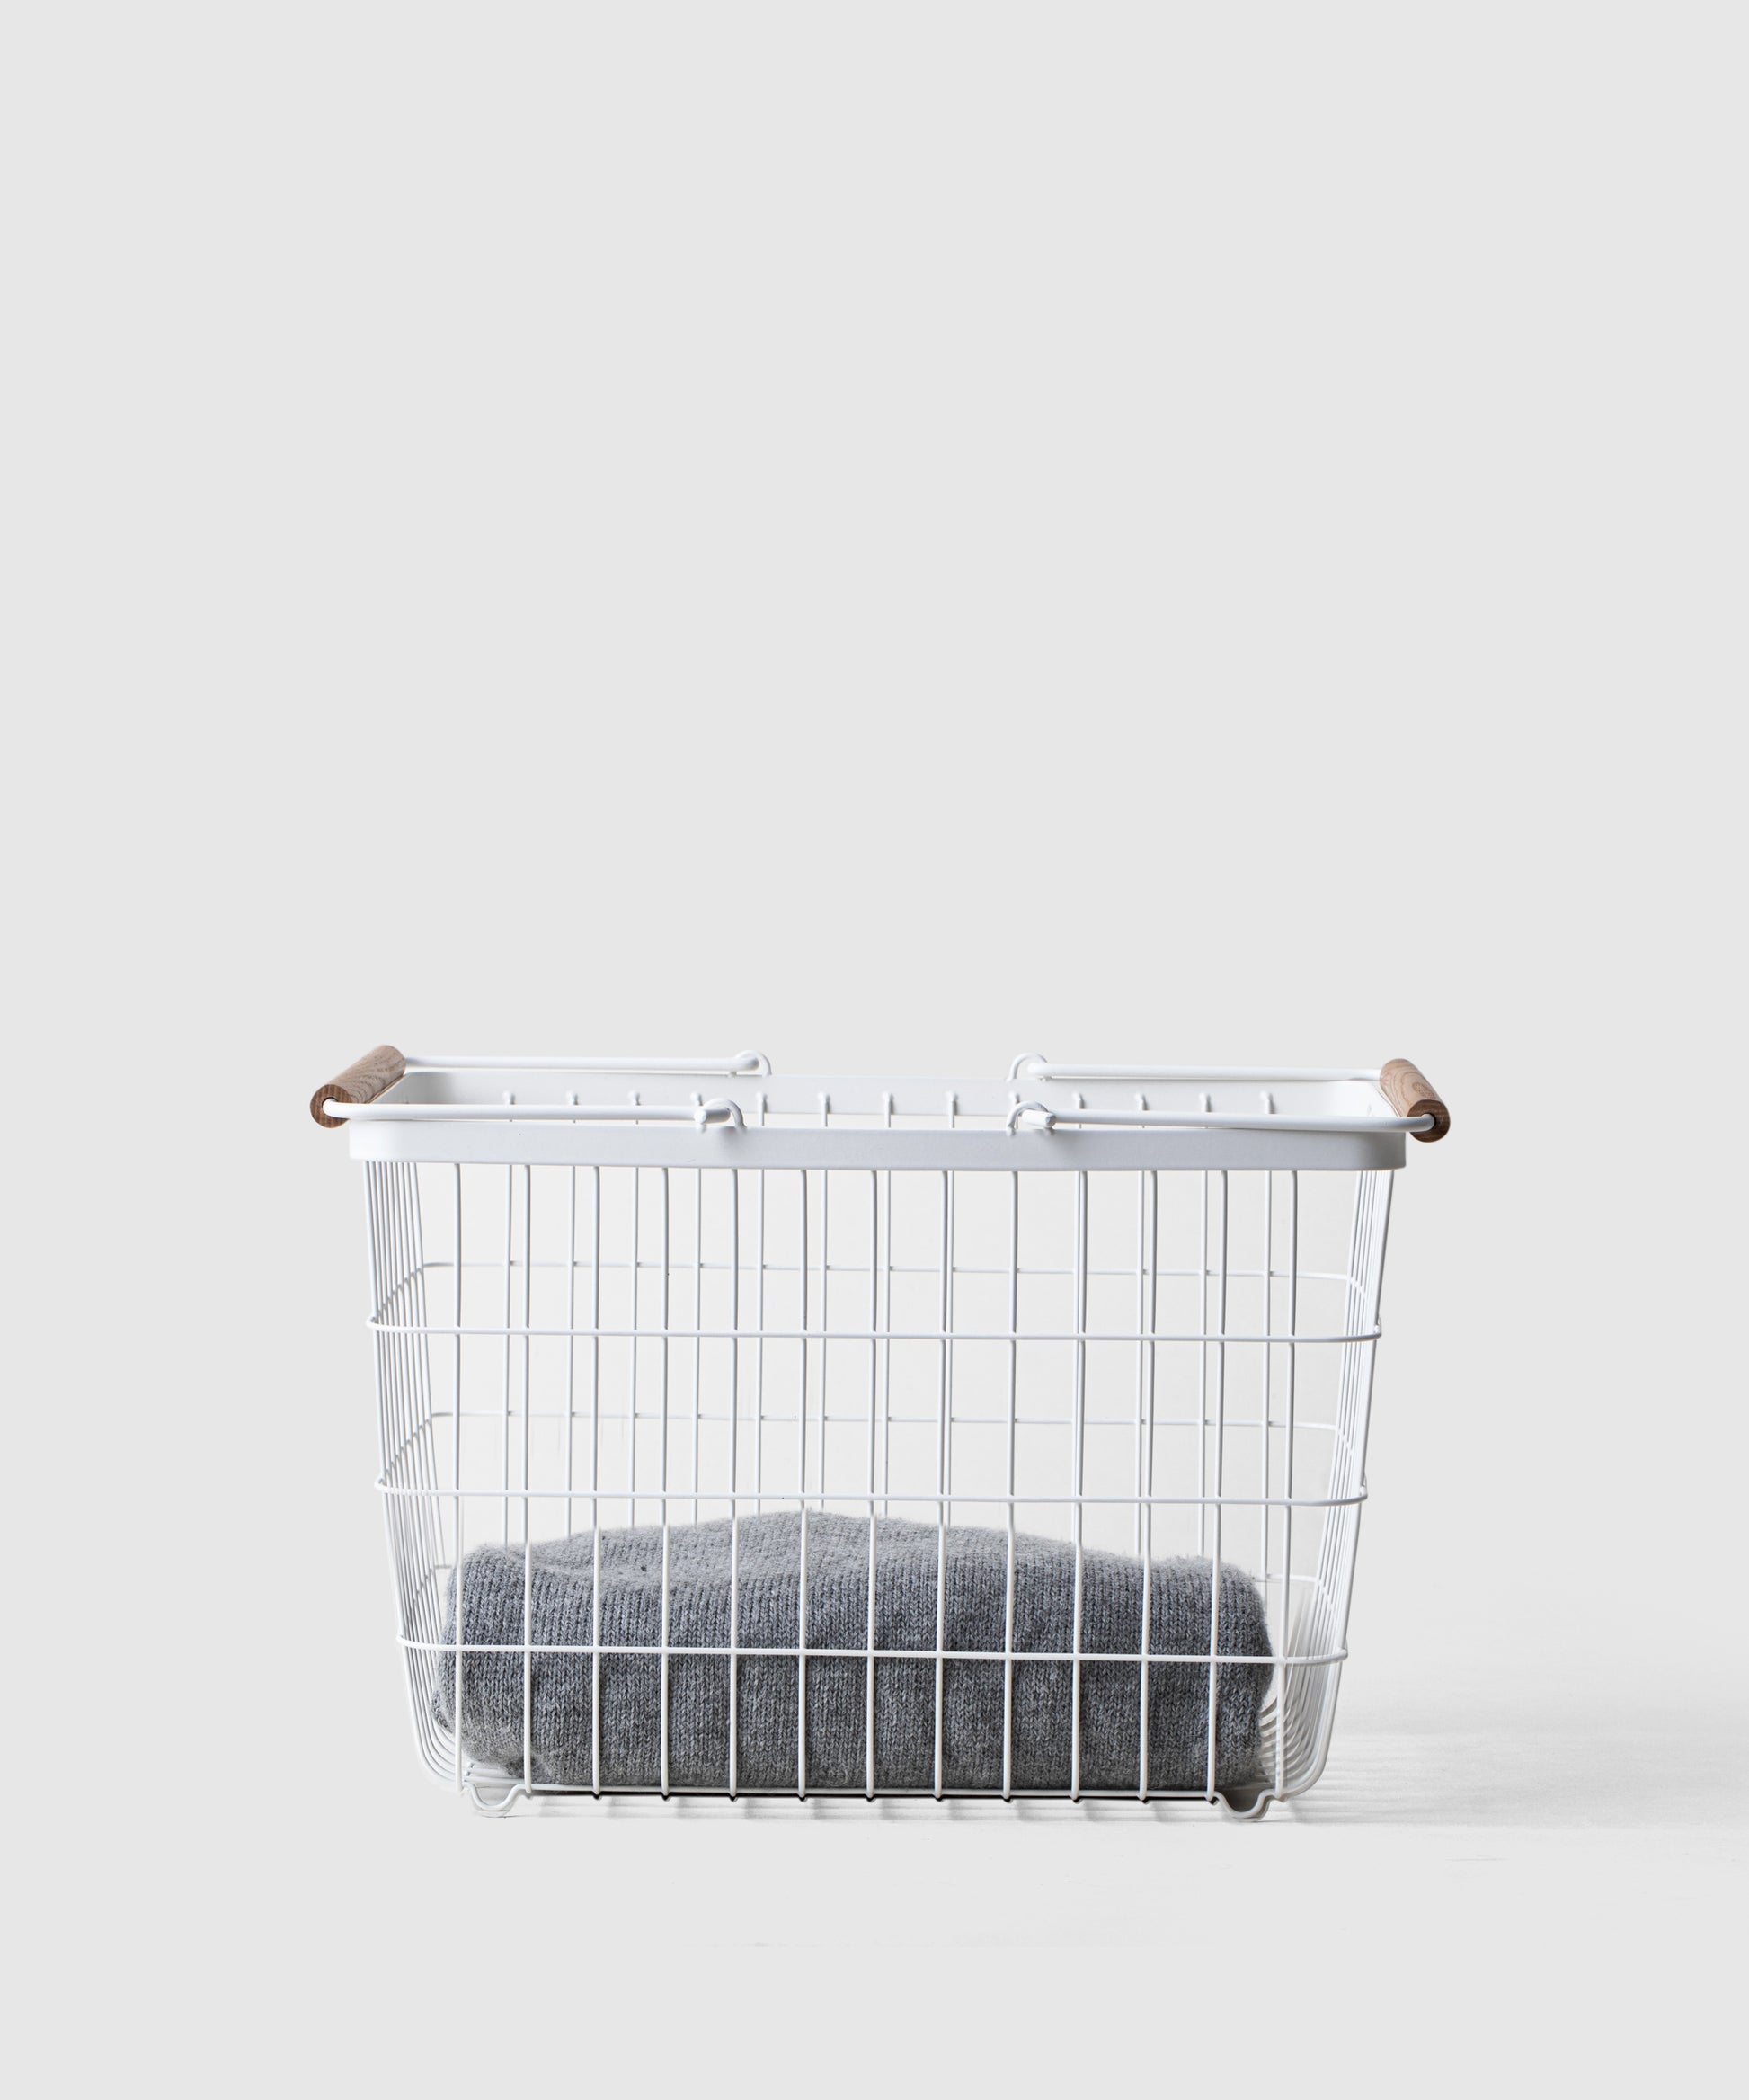 YAMAZAKI Home Storage Organizer/Cleaning Caddy/Storage Basket With